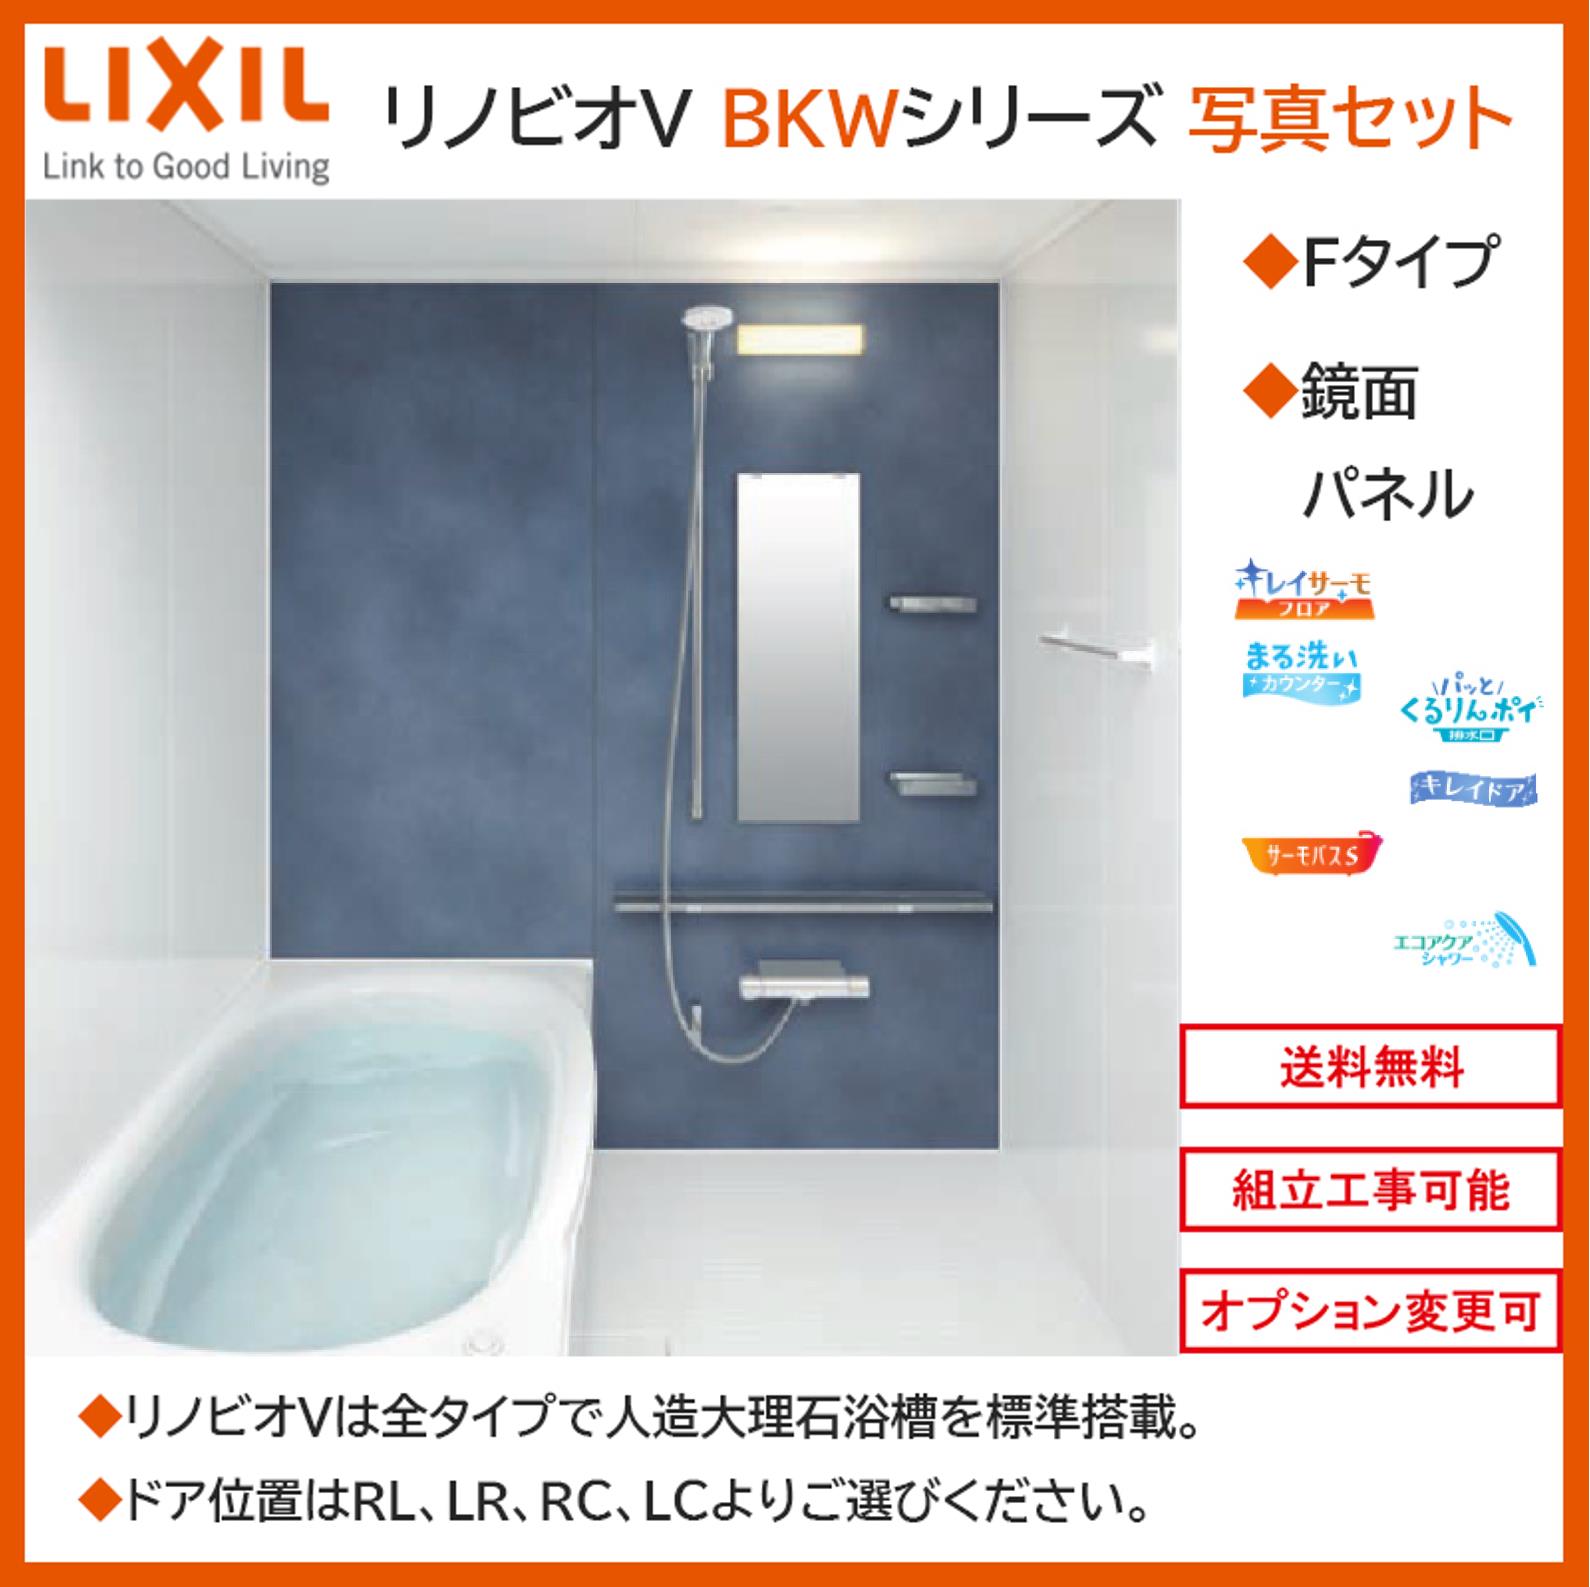 【いします】 LIXIL リノビオV BKWシリーズ Fタイプ 1418サイズ 写真セット 鏡面パネル BKW-1418LBF システムバスルーム（オプション対応，メーカー直送）【送料無料】：エクセレント建材 サイズです